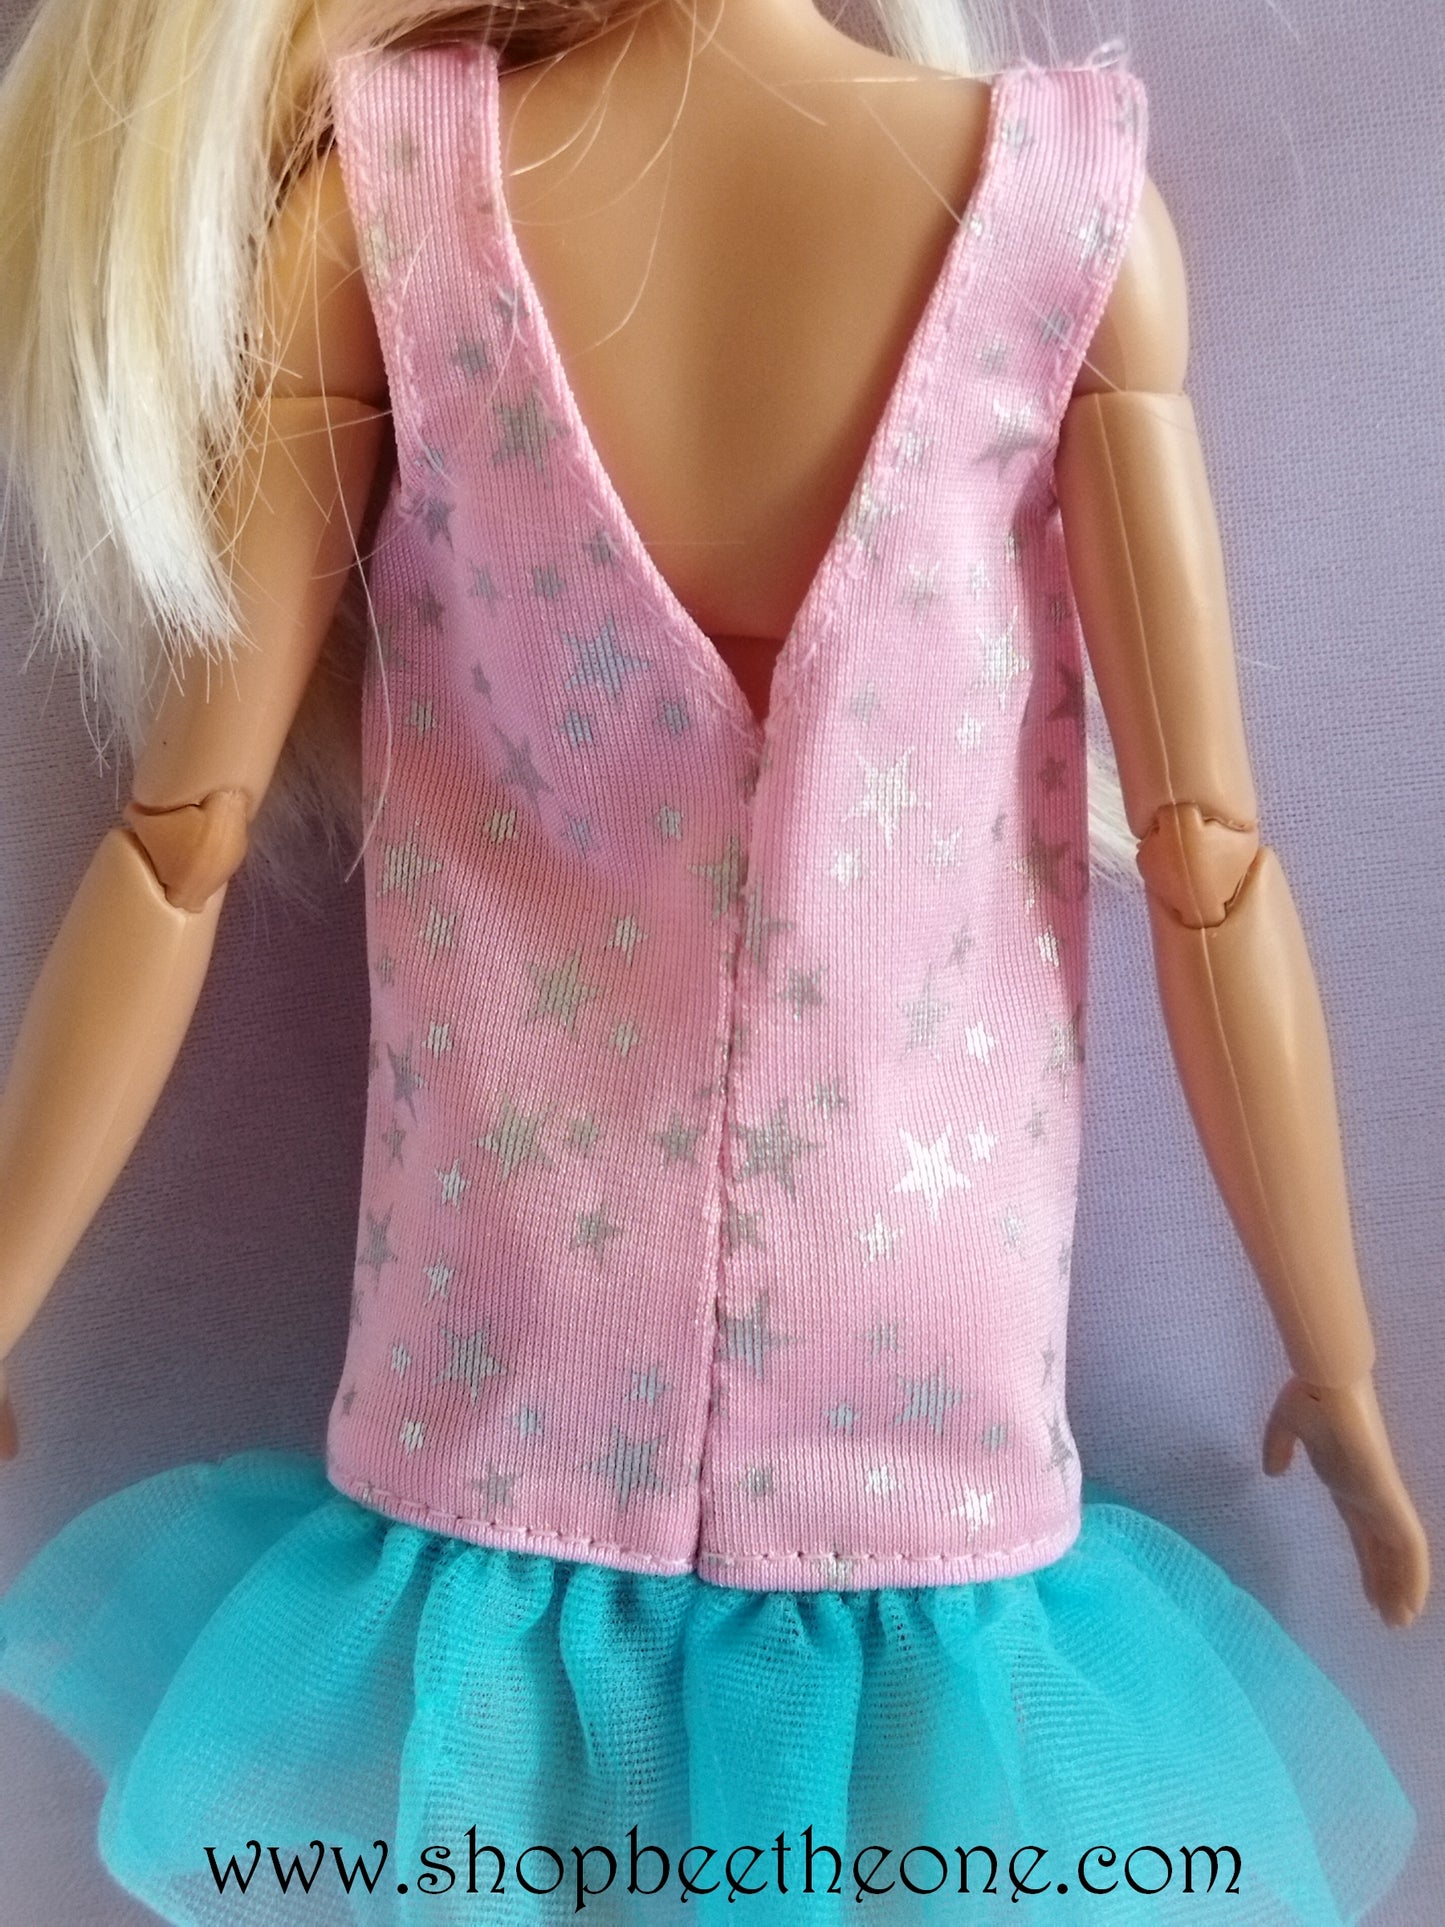 Calendrier Barbie 15 mois Année 1991 - exclusivité usa - Mattel 1990 - Vêtement